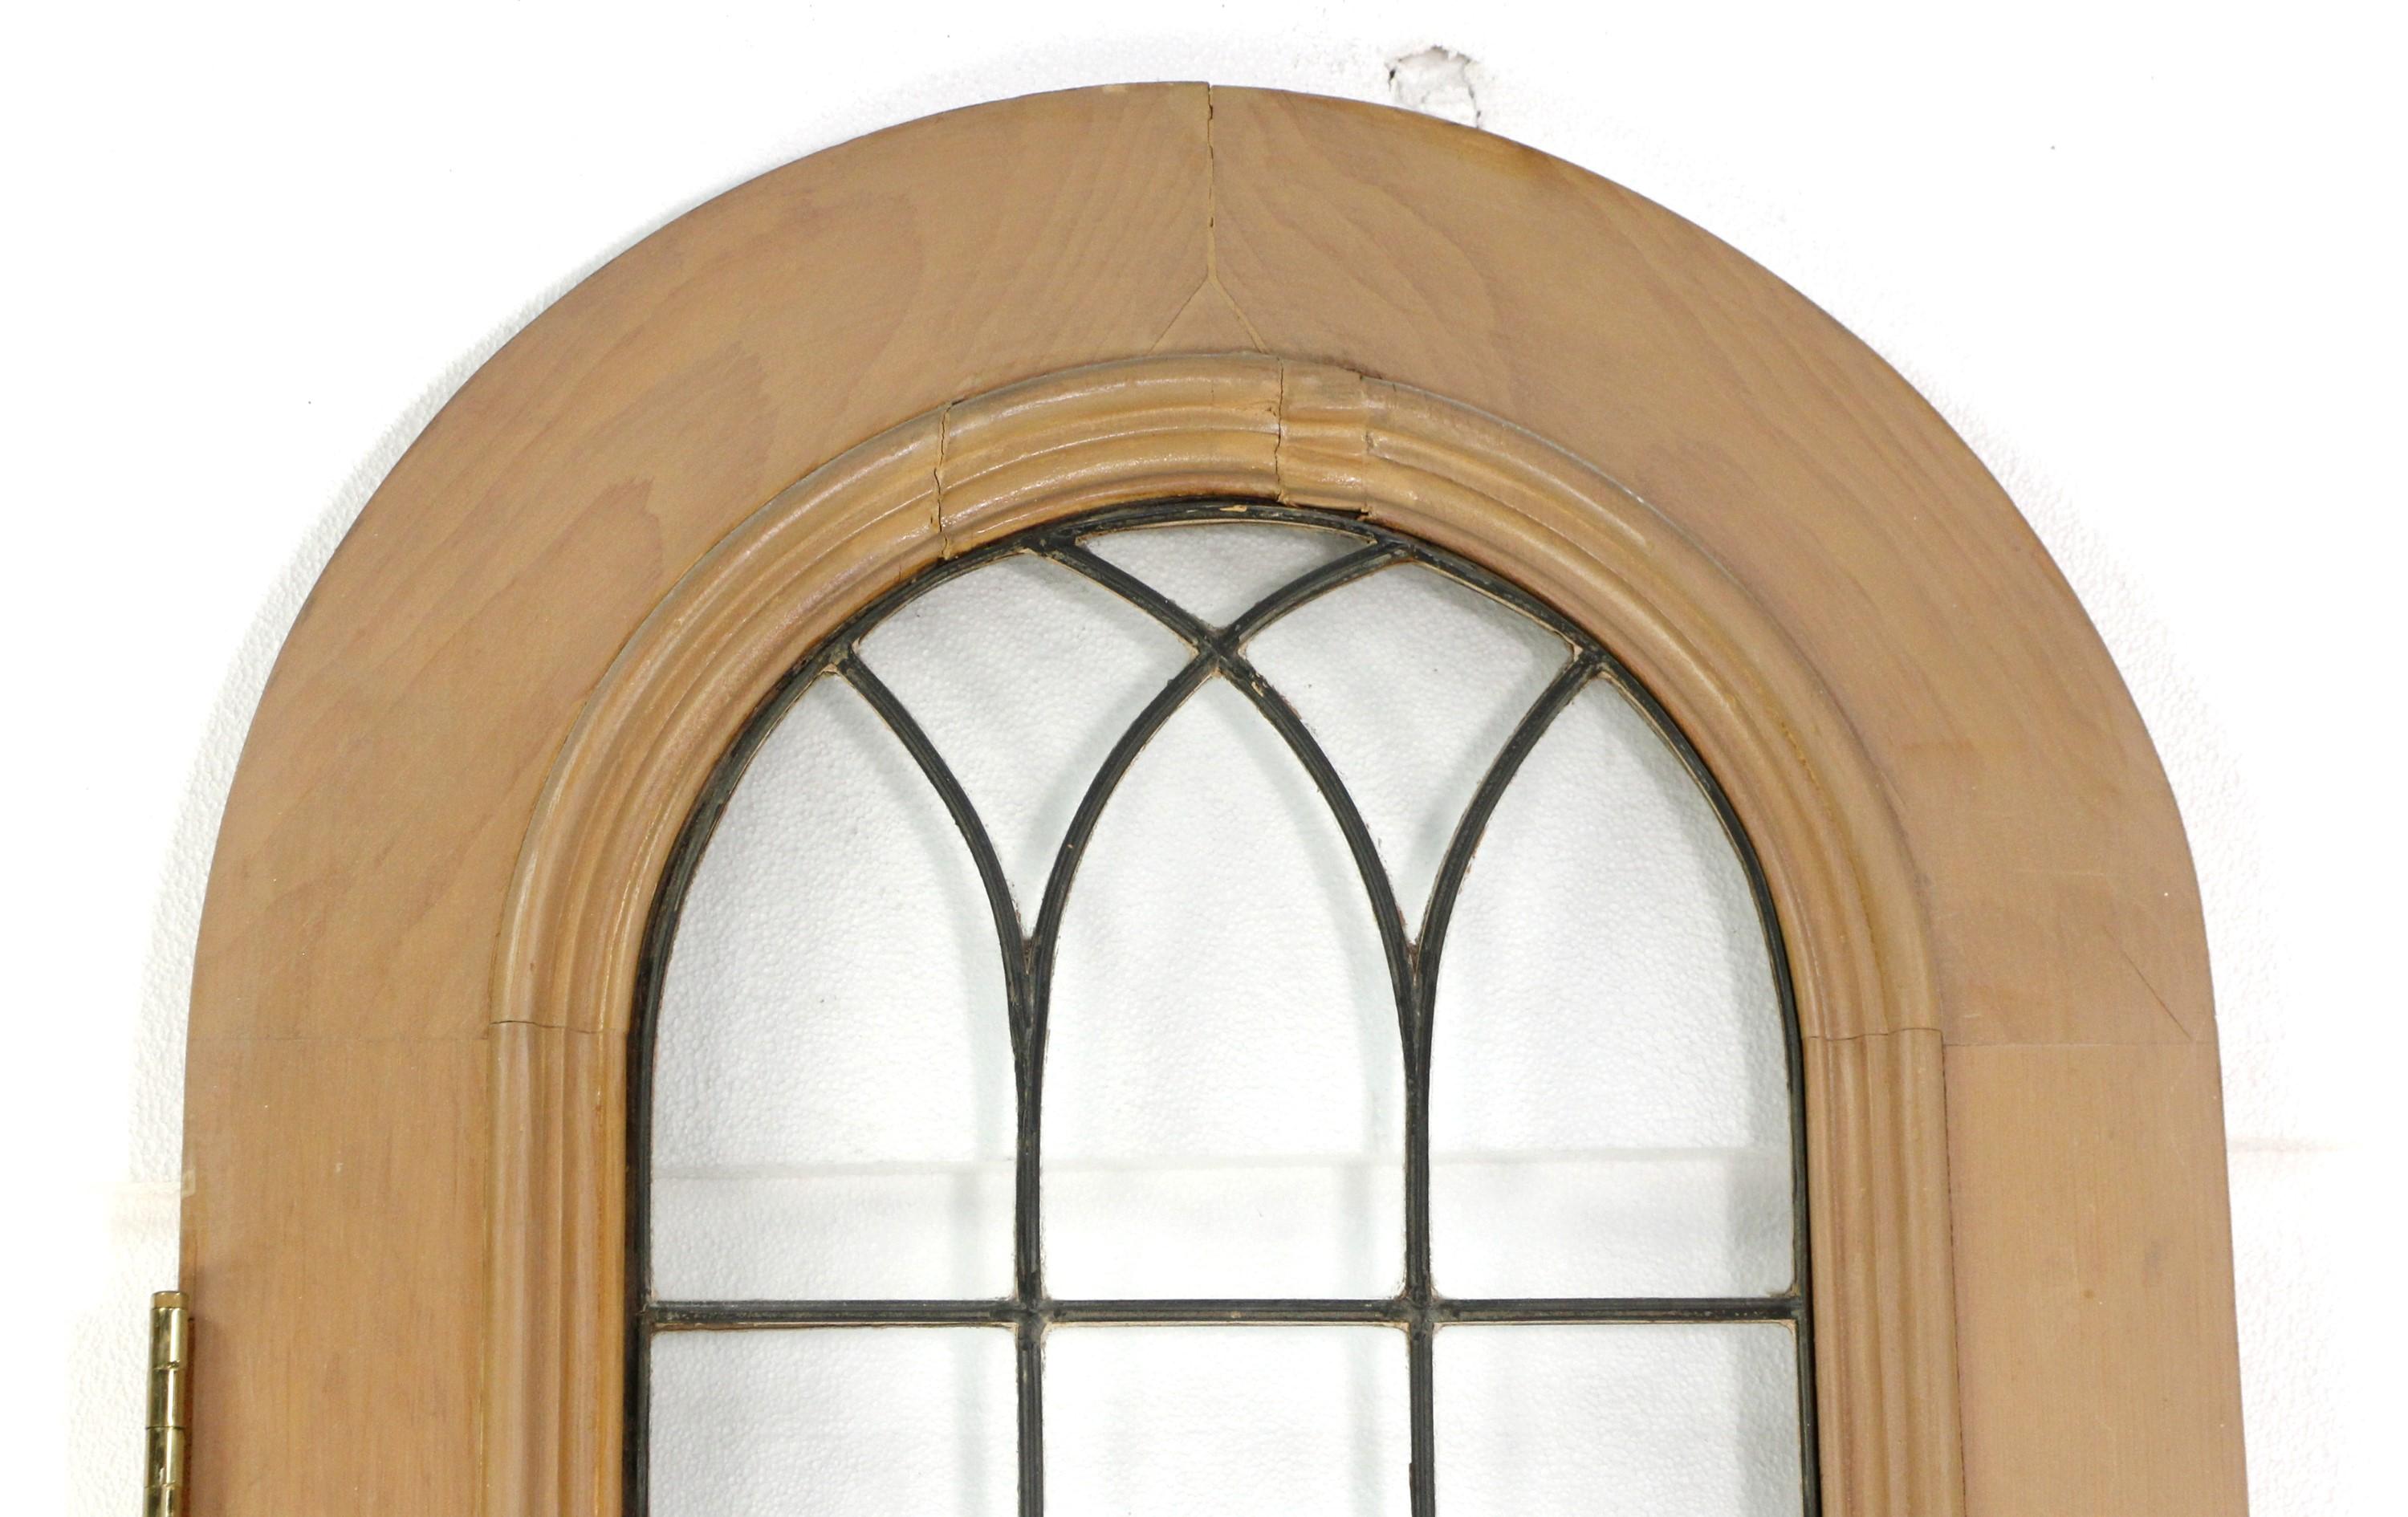 Gewölbte Holztür aus dem frühen 20. Jahrhundert in hellem Ton mit 21 Bleiglasfenstern und einer Bodenplatte. Kleine Chips und Kratzer aufgrund seines Alters. Siehe Bilder. Bitte beachten Sie, dieser Artikel befindet sich in unserem Standort in